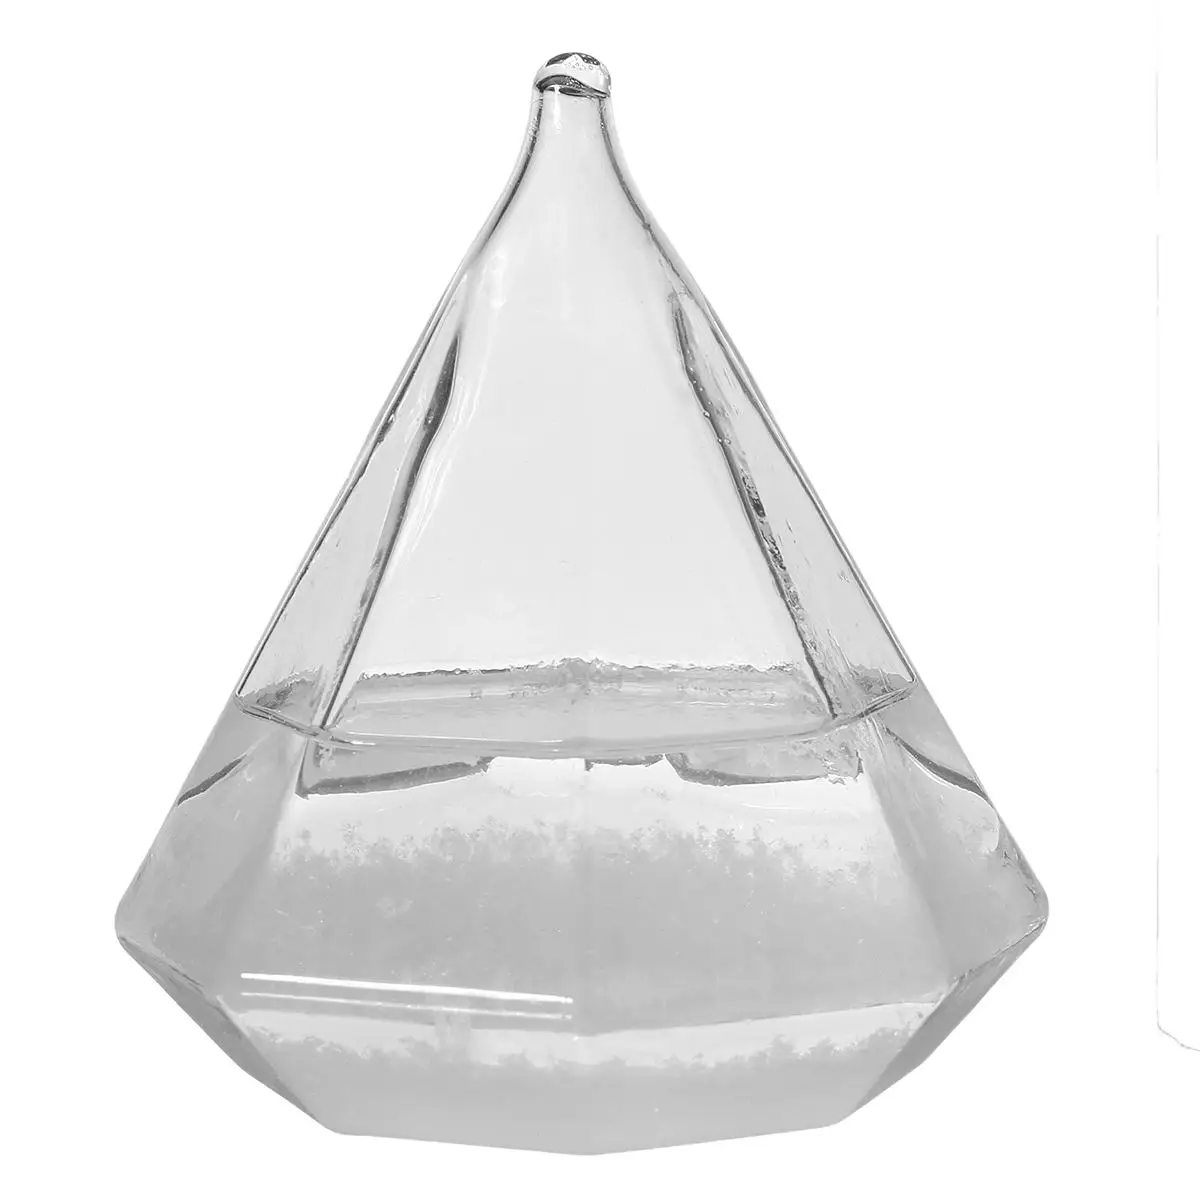 Прозрачная капелька штормовое стекло капли воды погода шторм предсказатель монитор бутылка барометр домашний декор